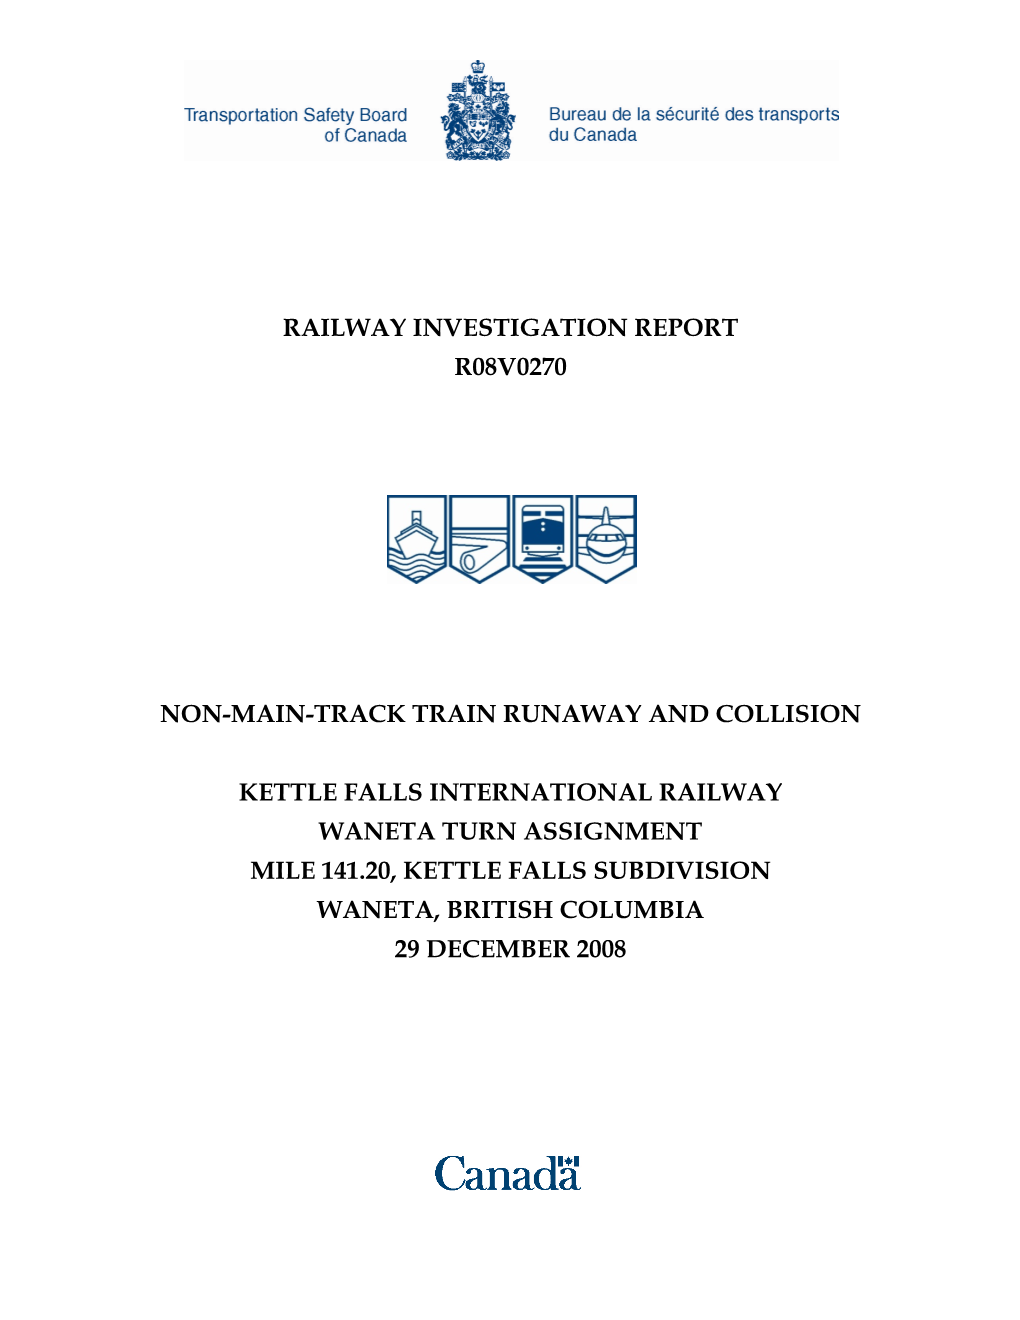 Railway Investigation Report R08v0270 Non-Main-Track